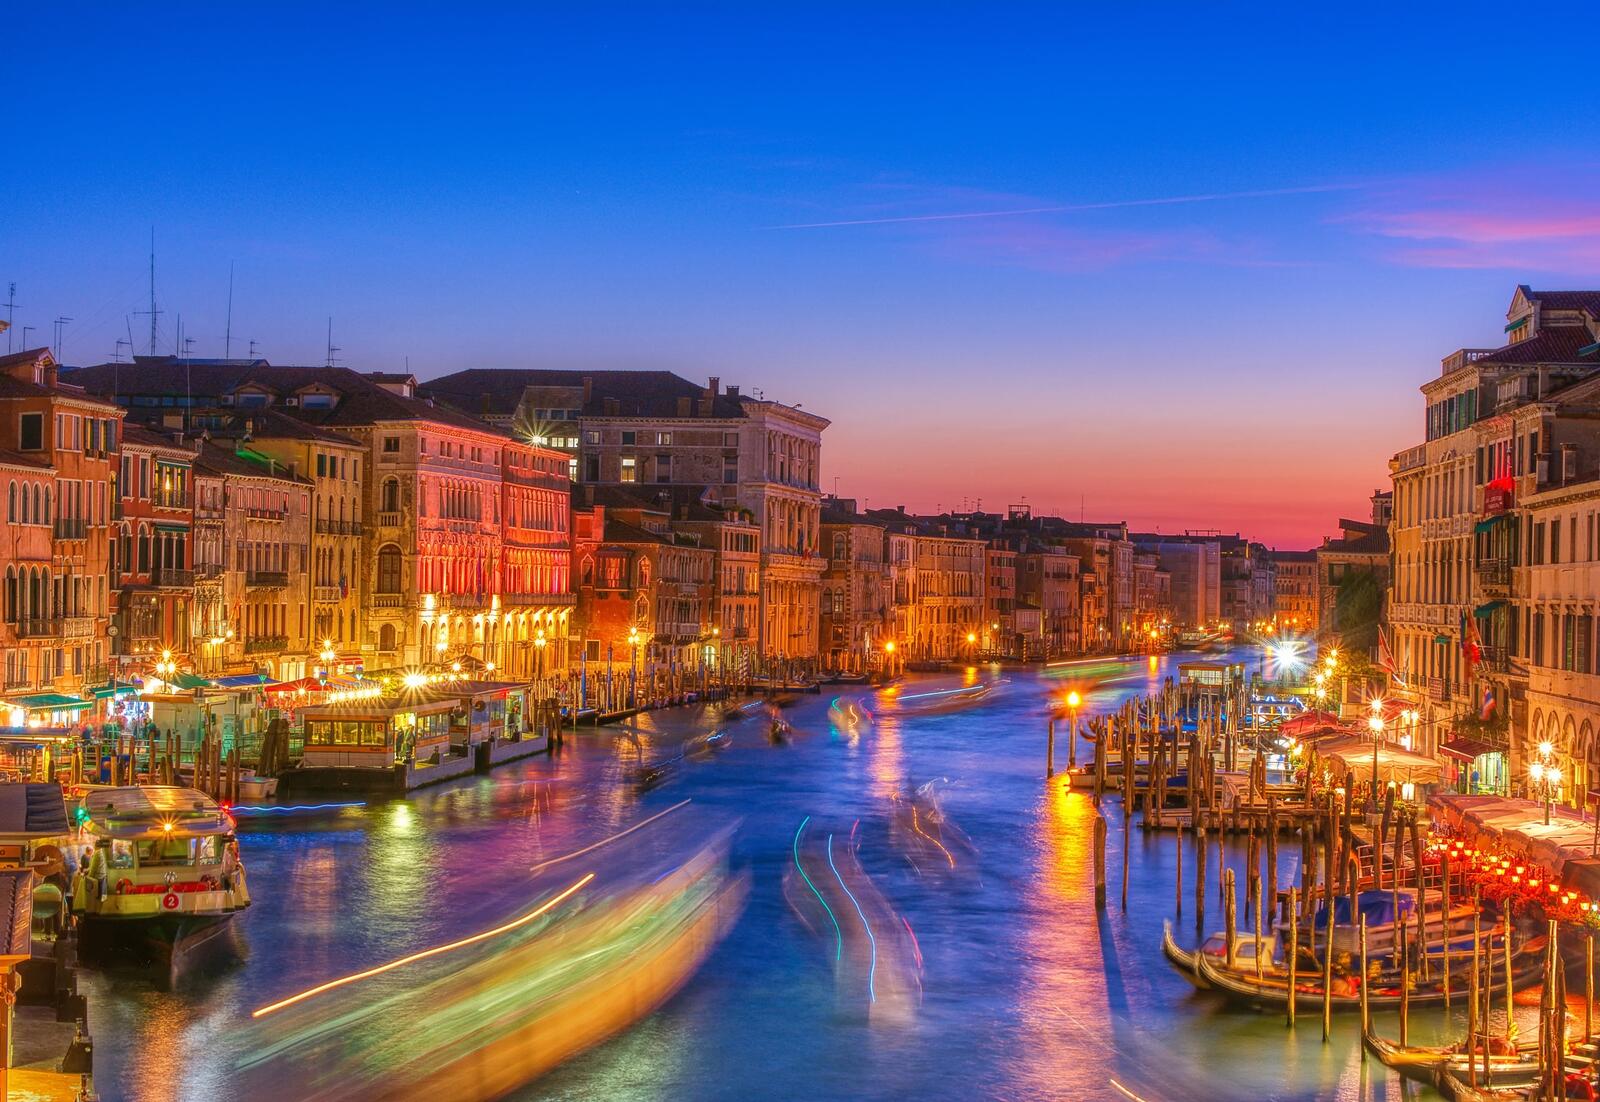 Обои Grand canal sunset Venice на рабочий стол